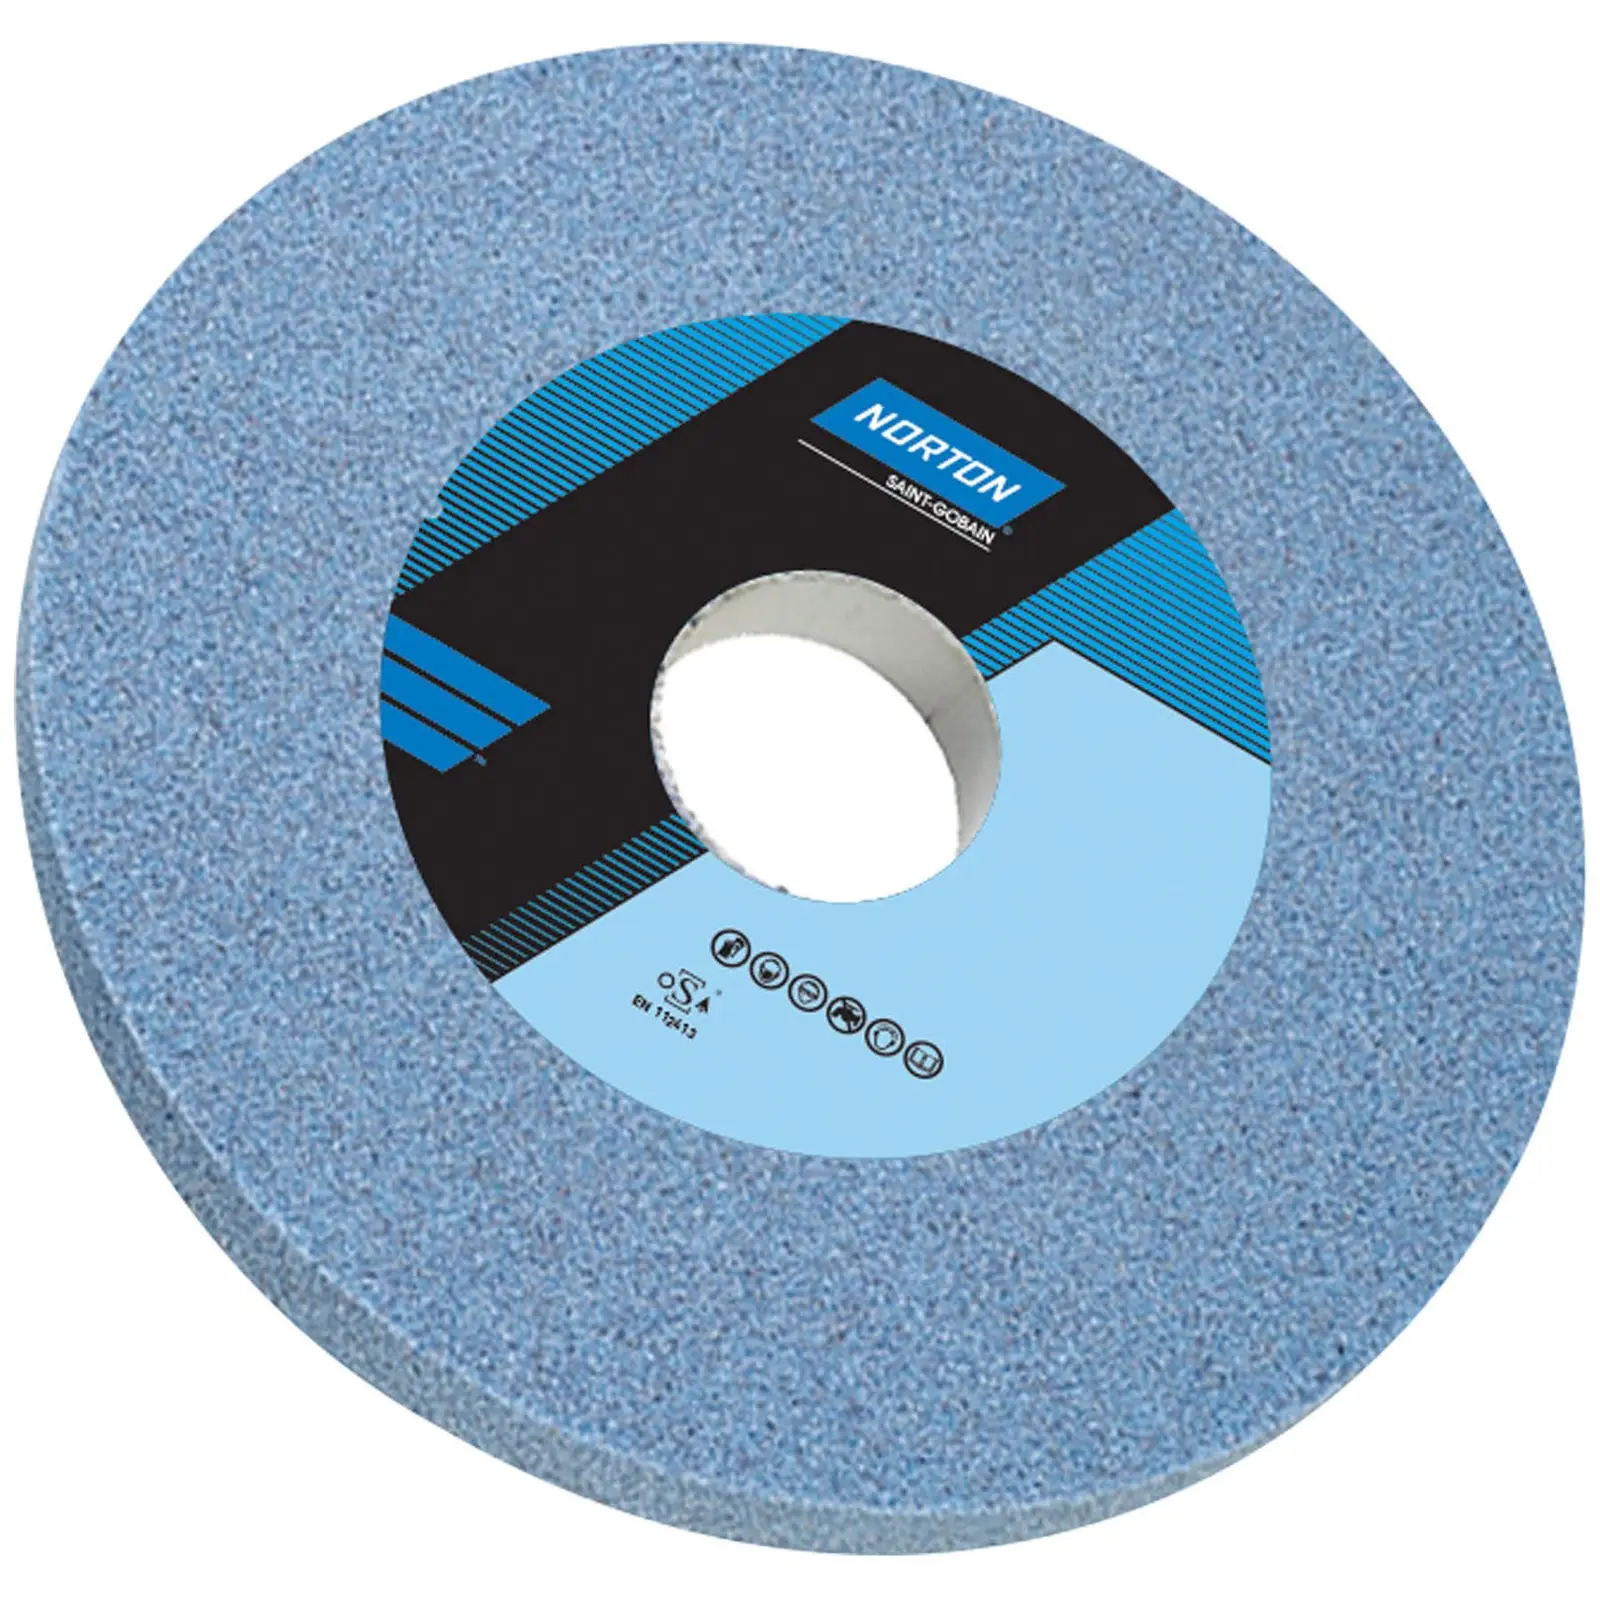 Disco para amoladora - Ø 250 mm - grano: 46 - grado de dureza: K - óxido de aluminio (cerámico)